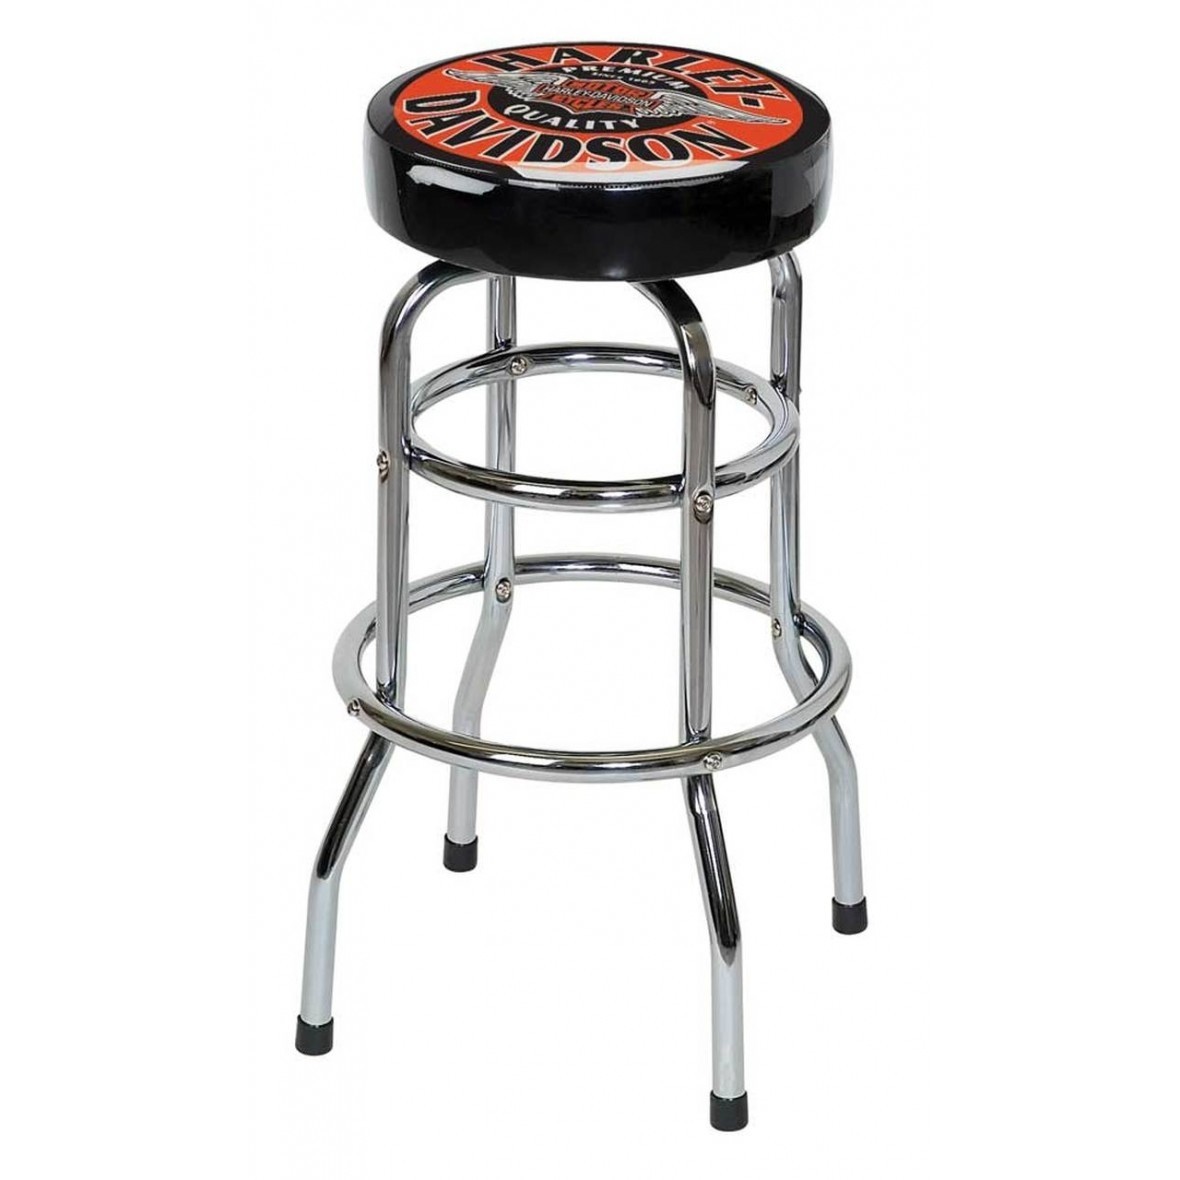 Harley davidson winged bar shield bar stool chrome 1